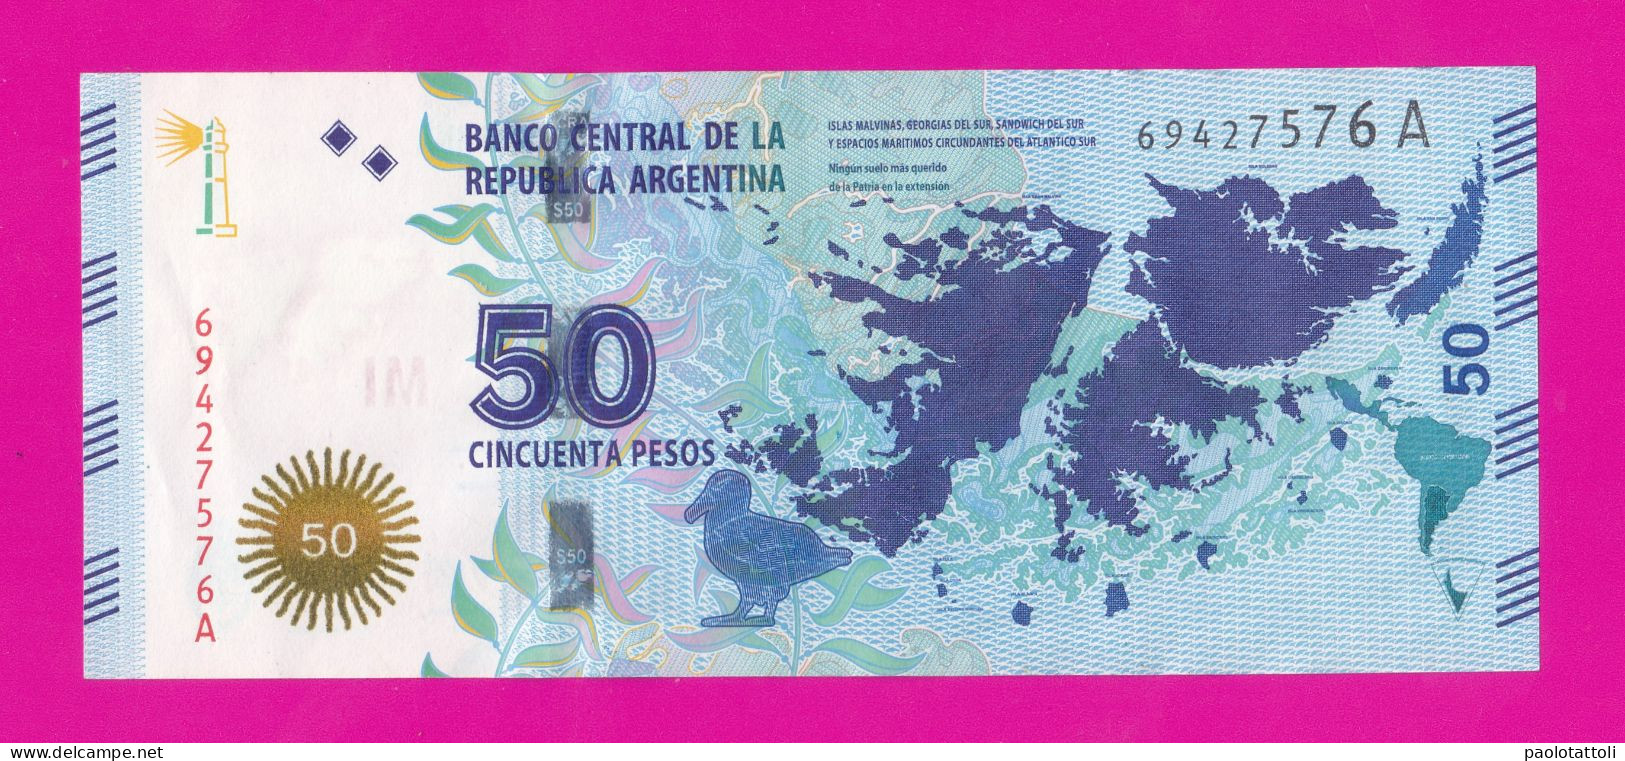 Argentina ,2015 - 50 Pesos. Suffix 76A.Obverse Outlines Of Islas Malvinas. Reverse Gaucho Antonio Rivero. - Argentinien